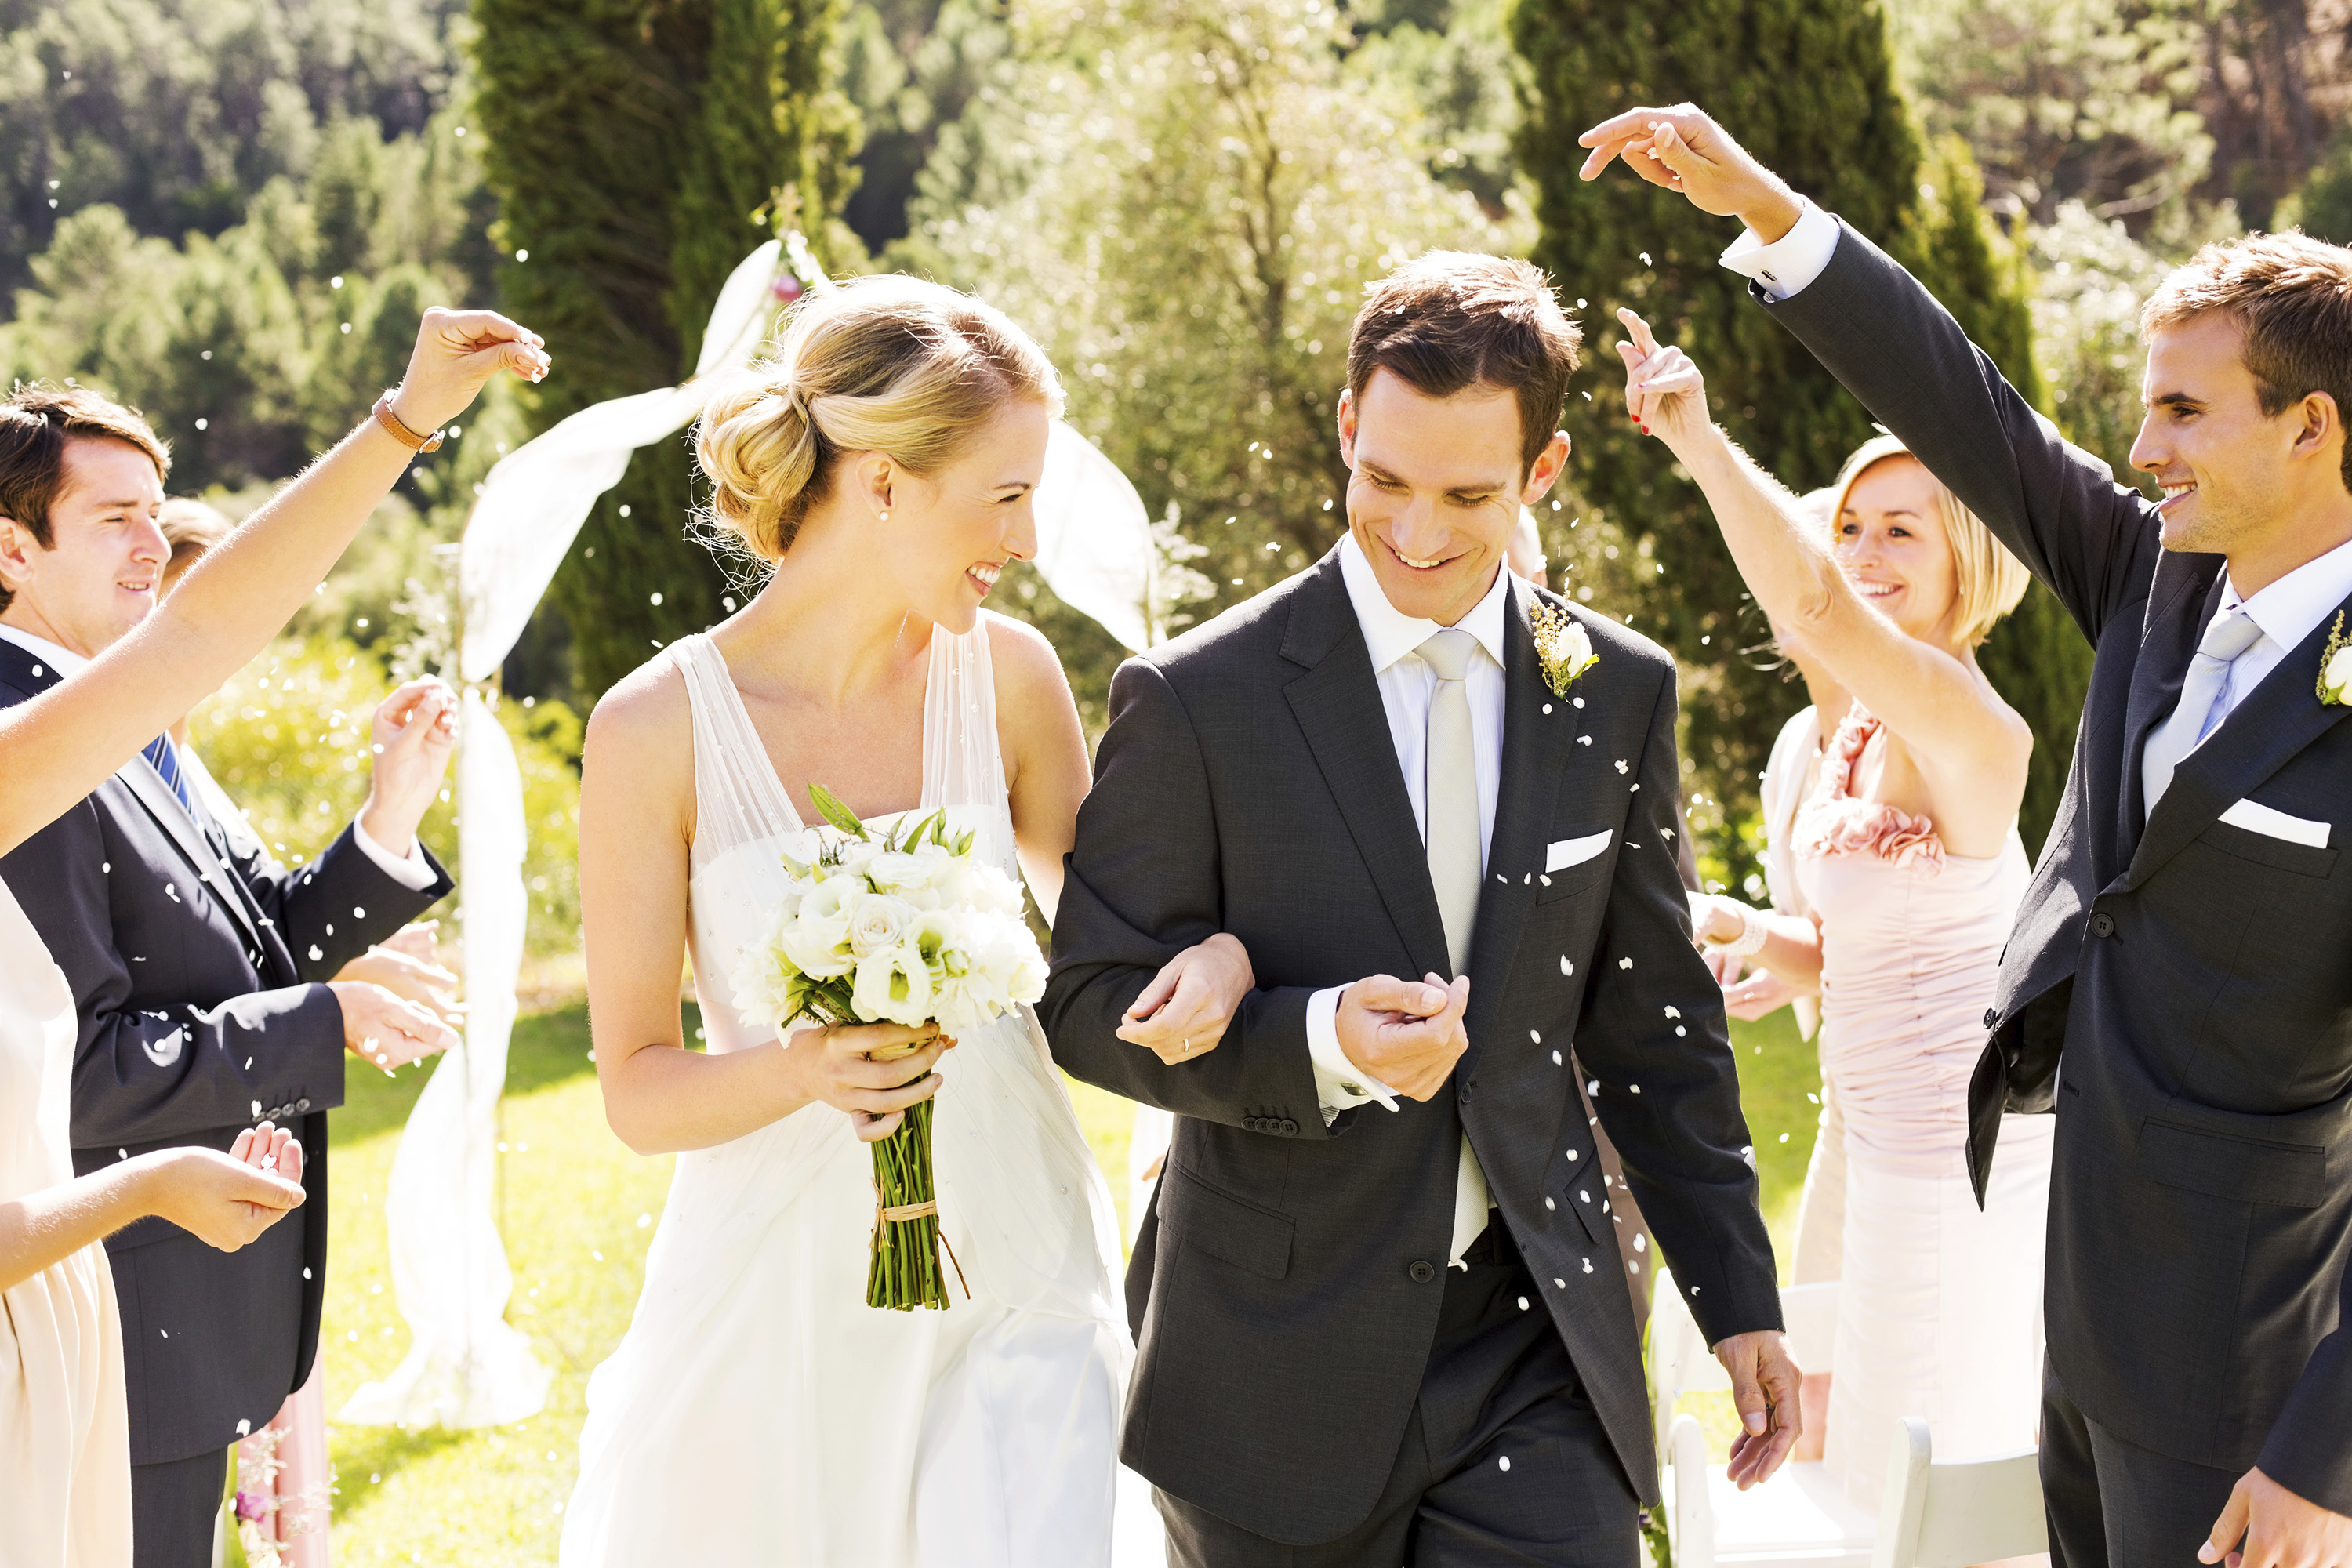 couples-in-love-men-bouquets-wedding-groom-bride-567447-3000x2000.jpg